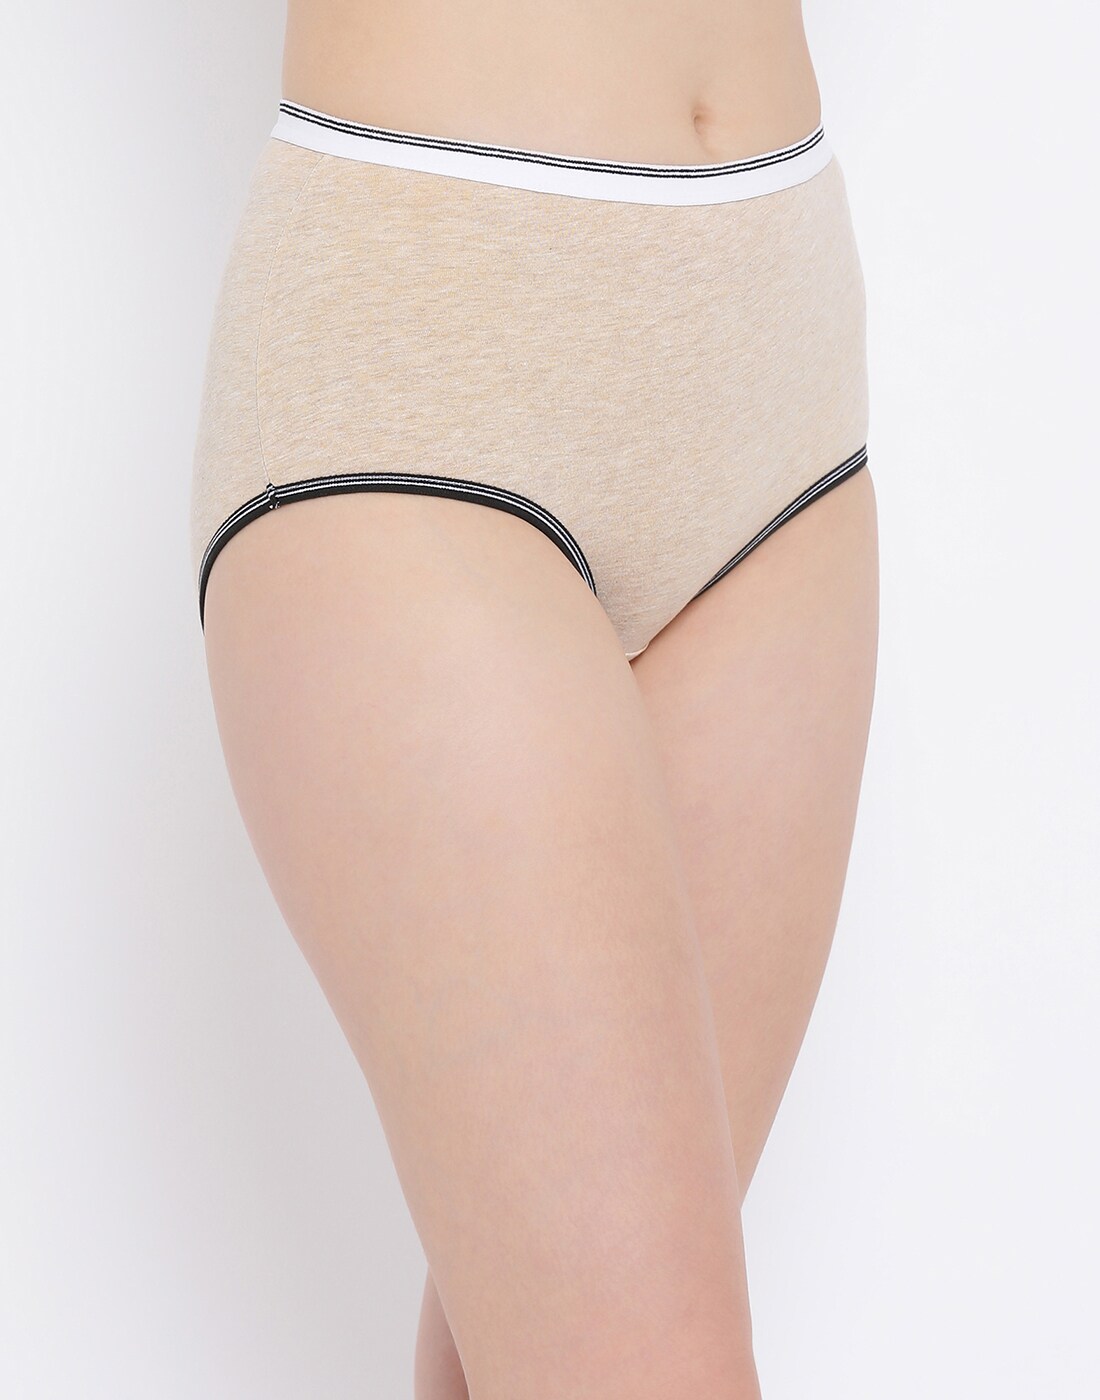 Buy Beige Panties for Women by Clovia Online